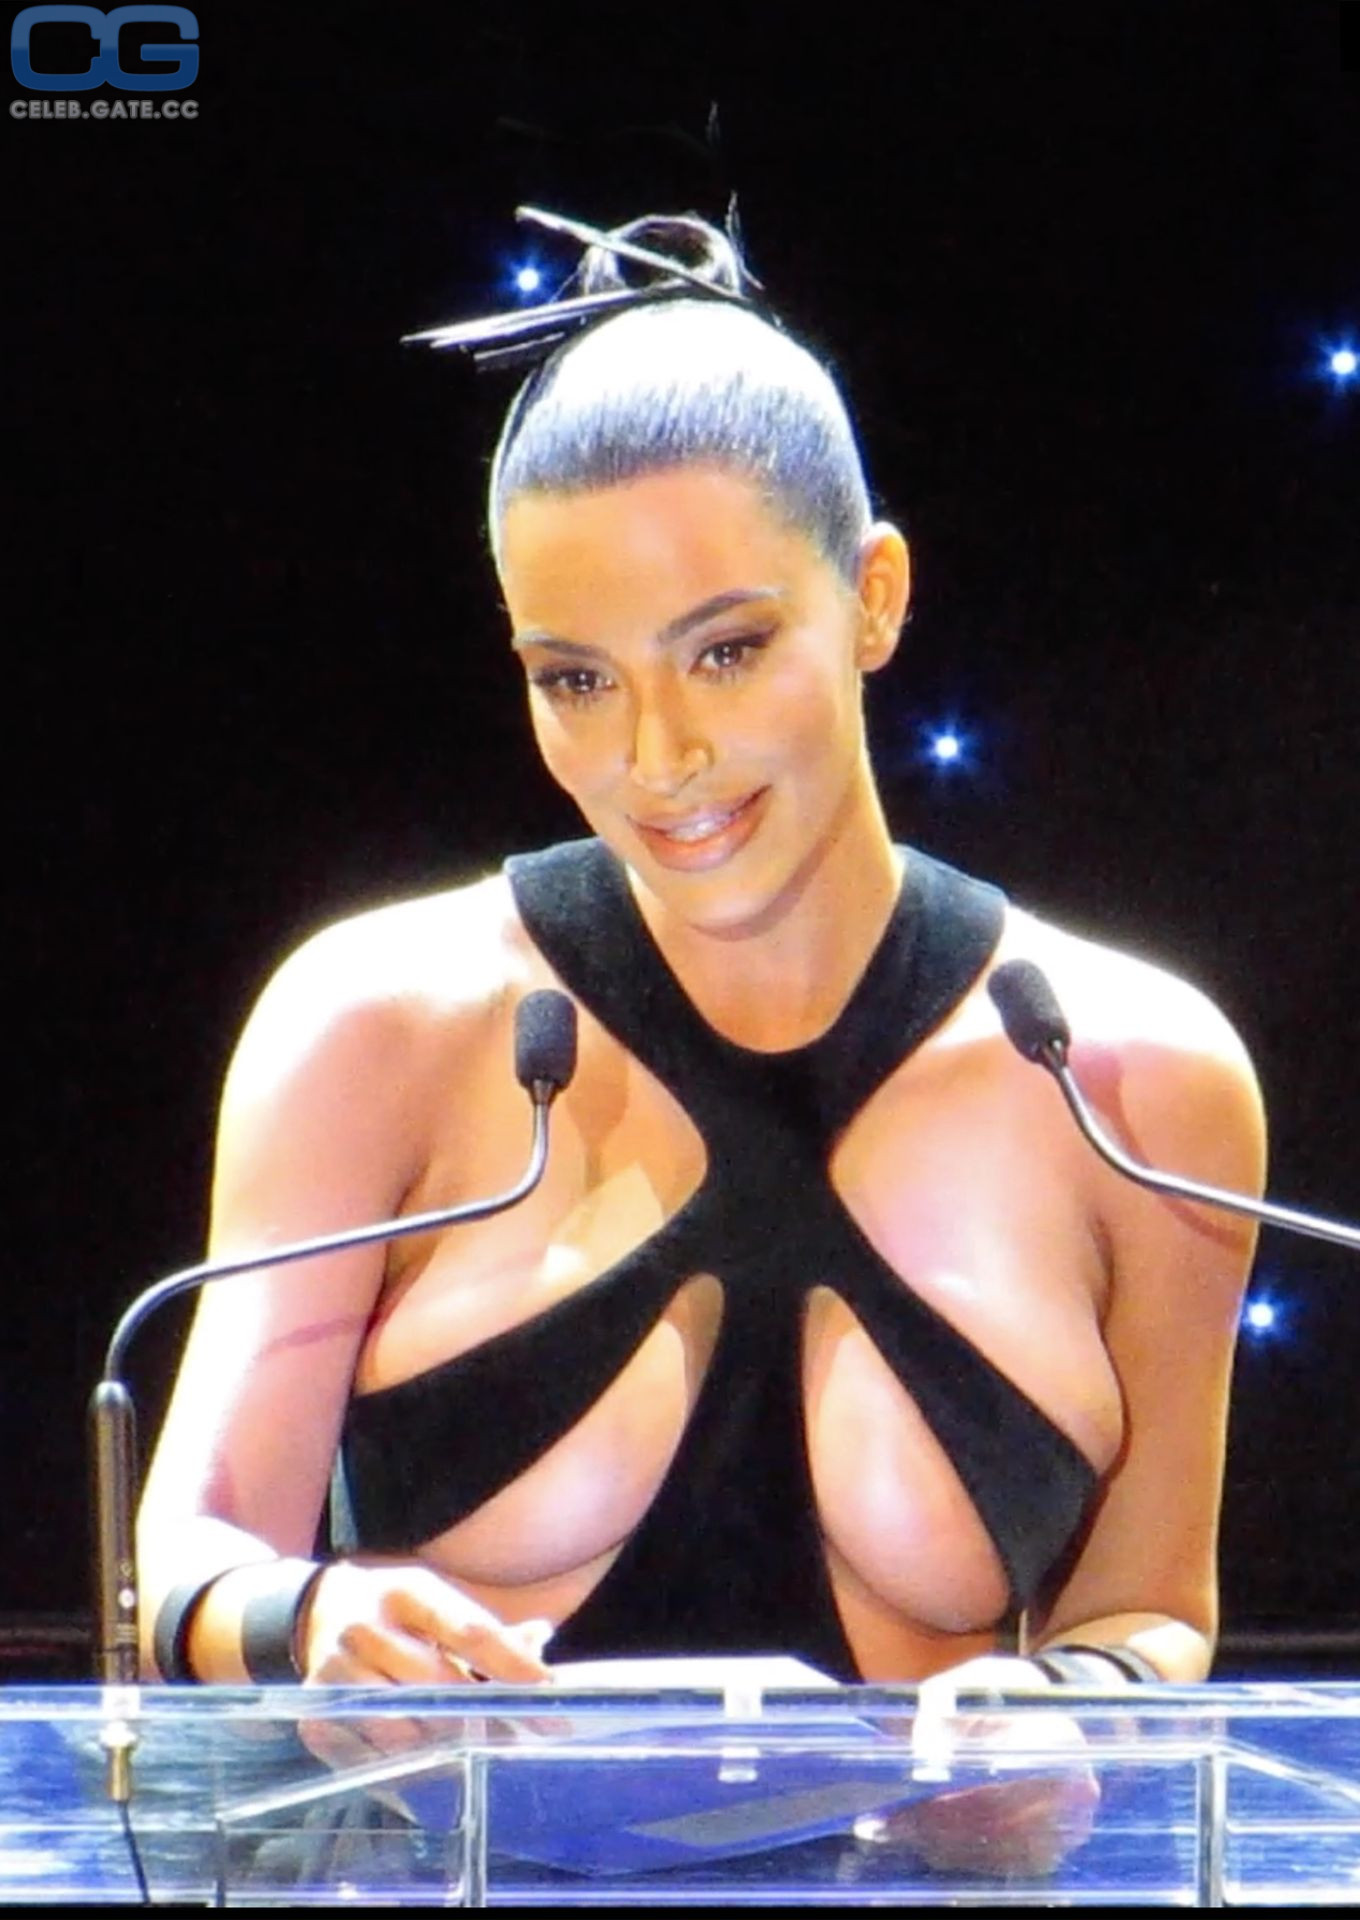 Kim kardashian tita